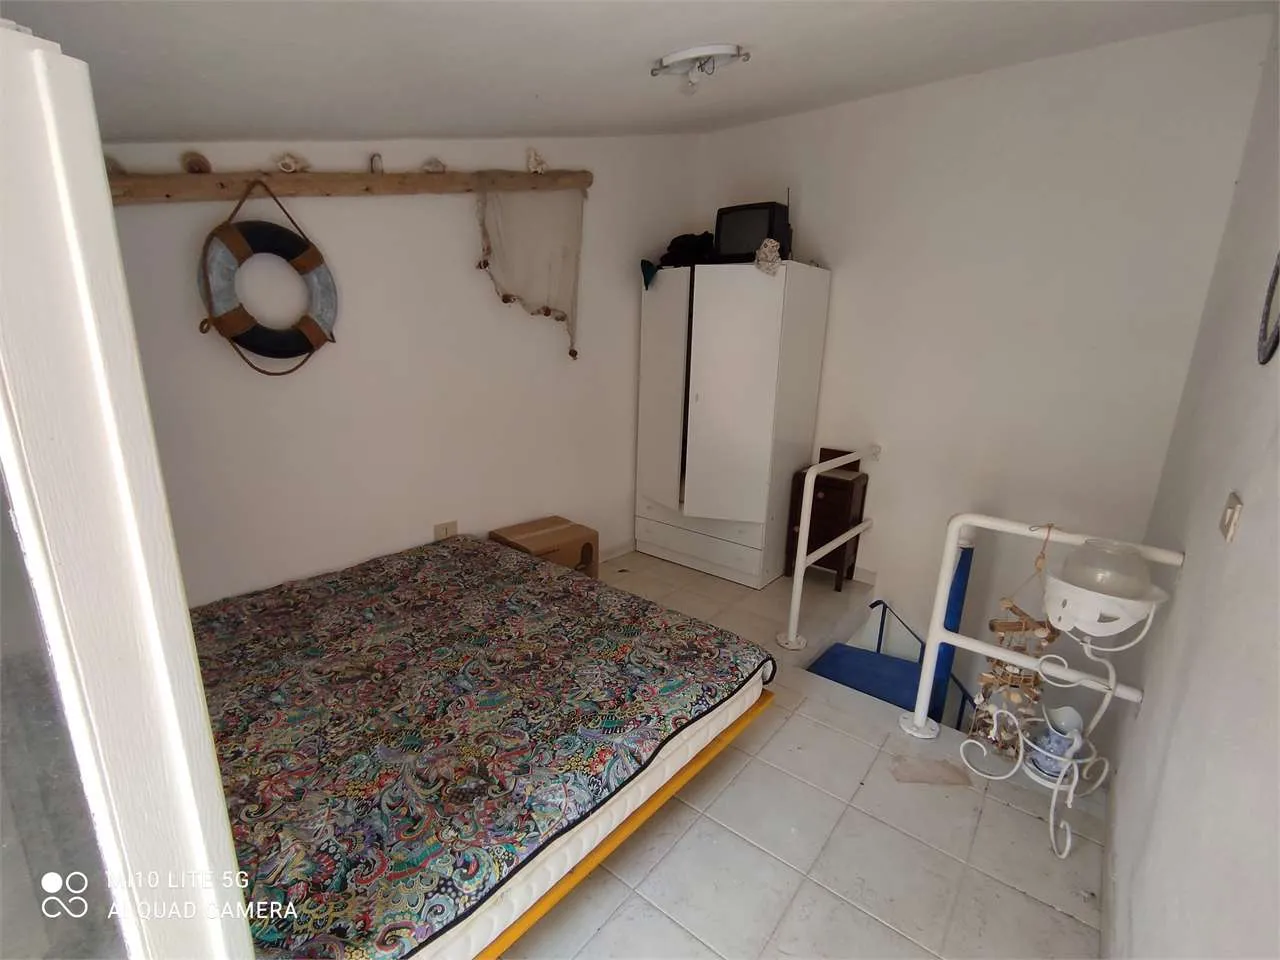 Immagine per Appartamento in vendita a Carloforte via Napoli 28